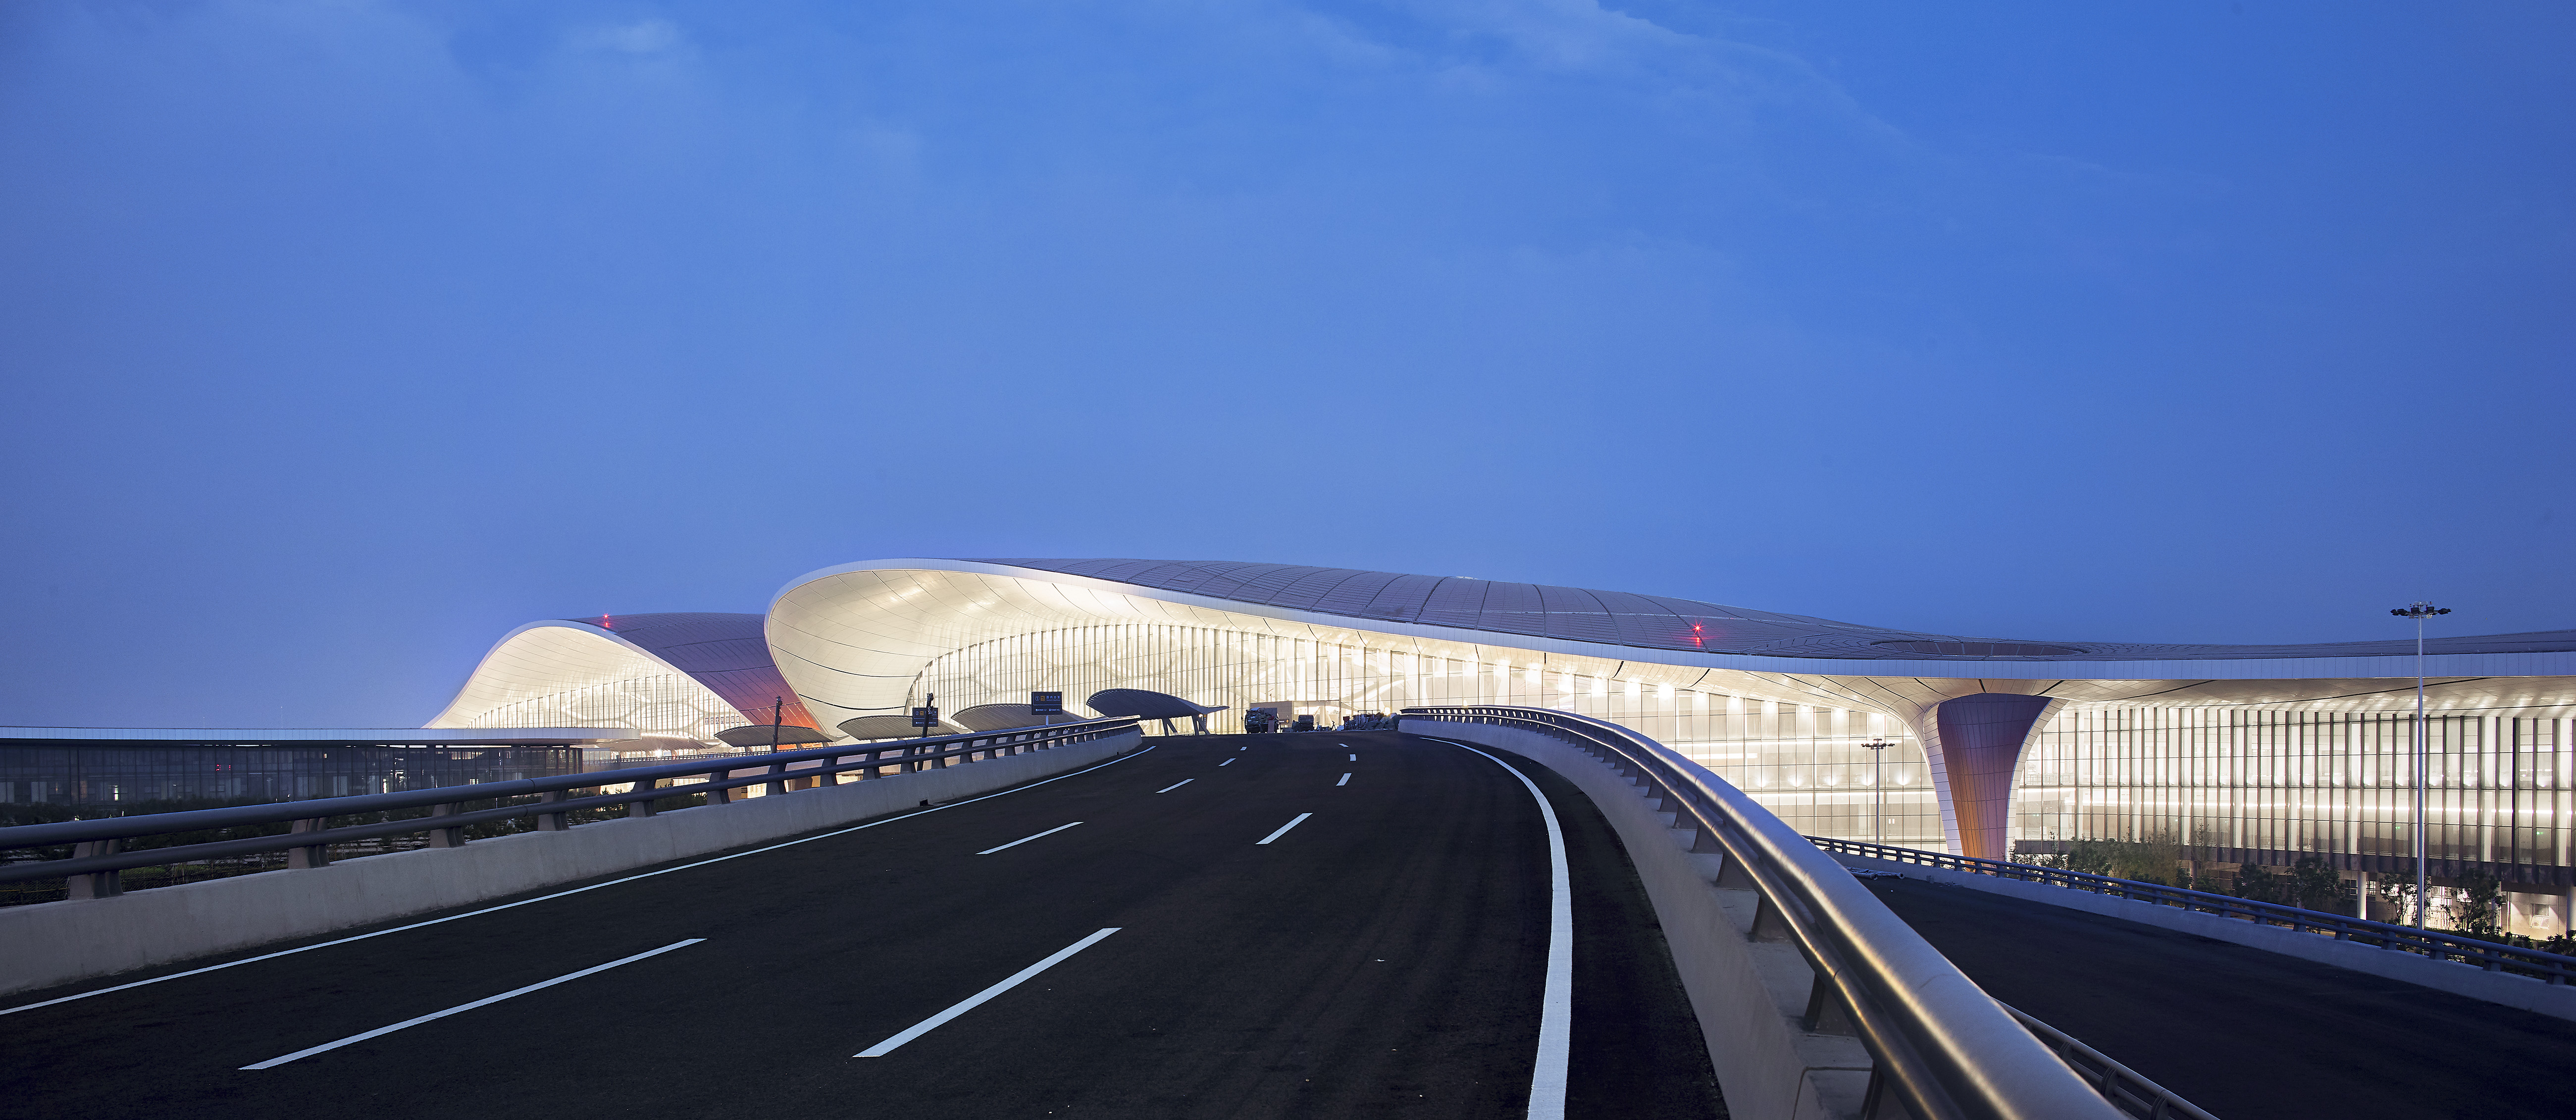 Área externa do aeroporto exibe a beleza do complexo (Foto: Hufton+Crow/Zaha Hadid Architects)